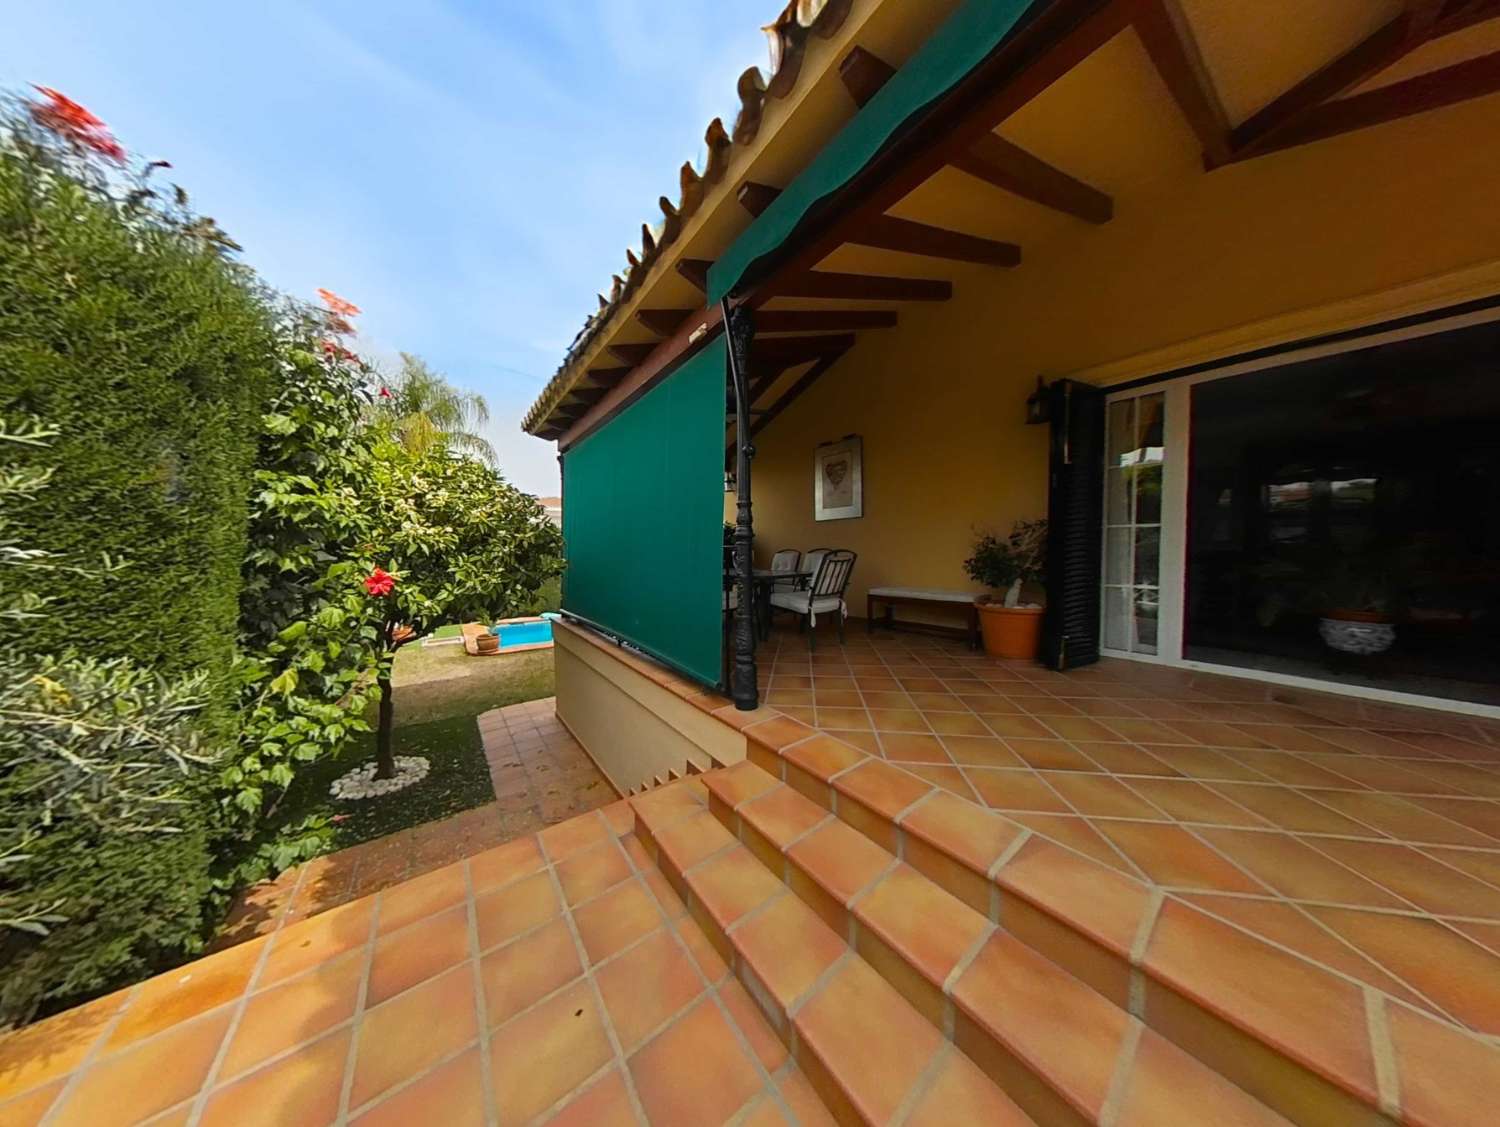 Detached 5-bedroom villa with garden and pool in Capellanía urbanization